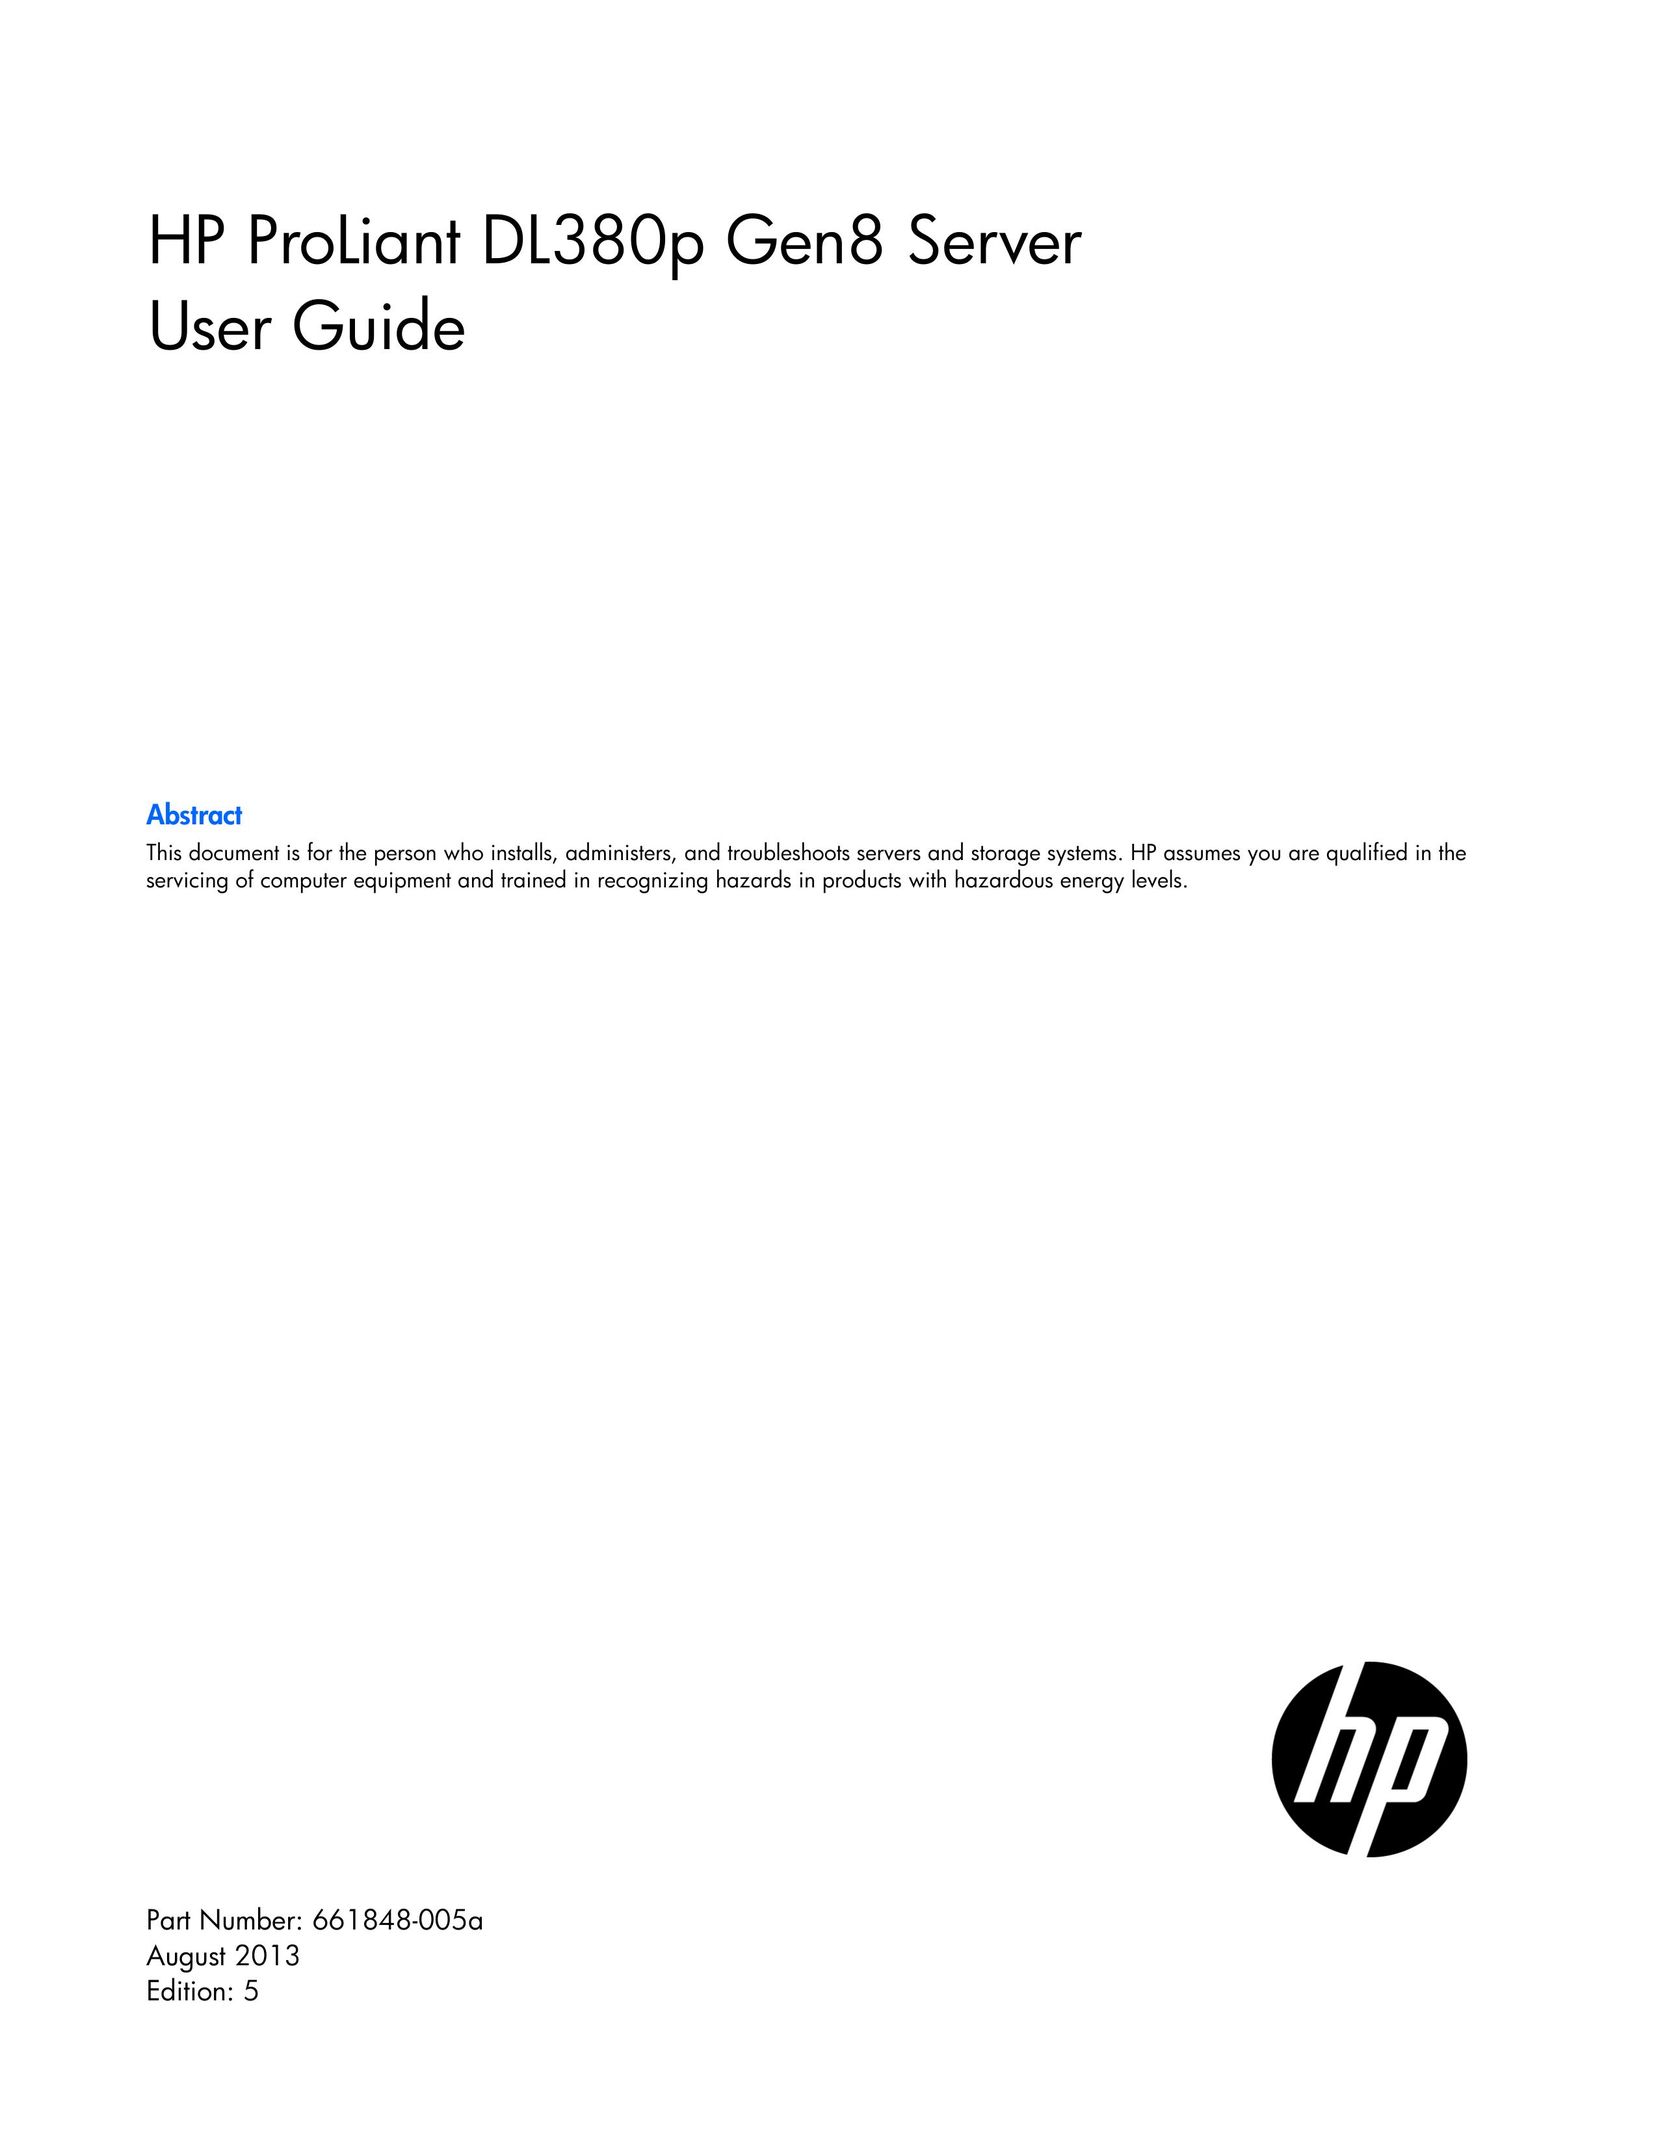 HP (Hewlett-Packard) 670856-S01 Server User Manual